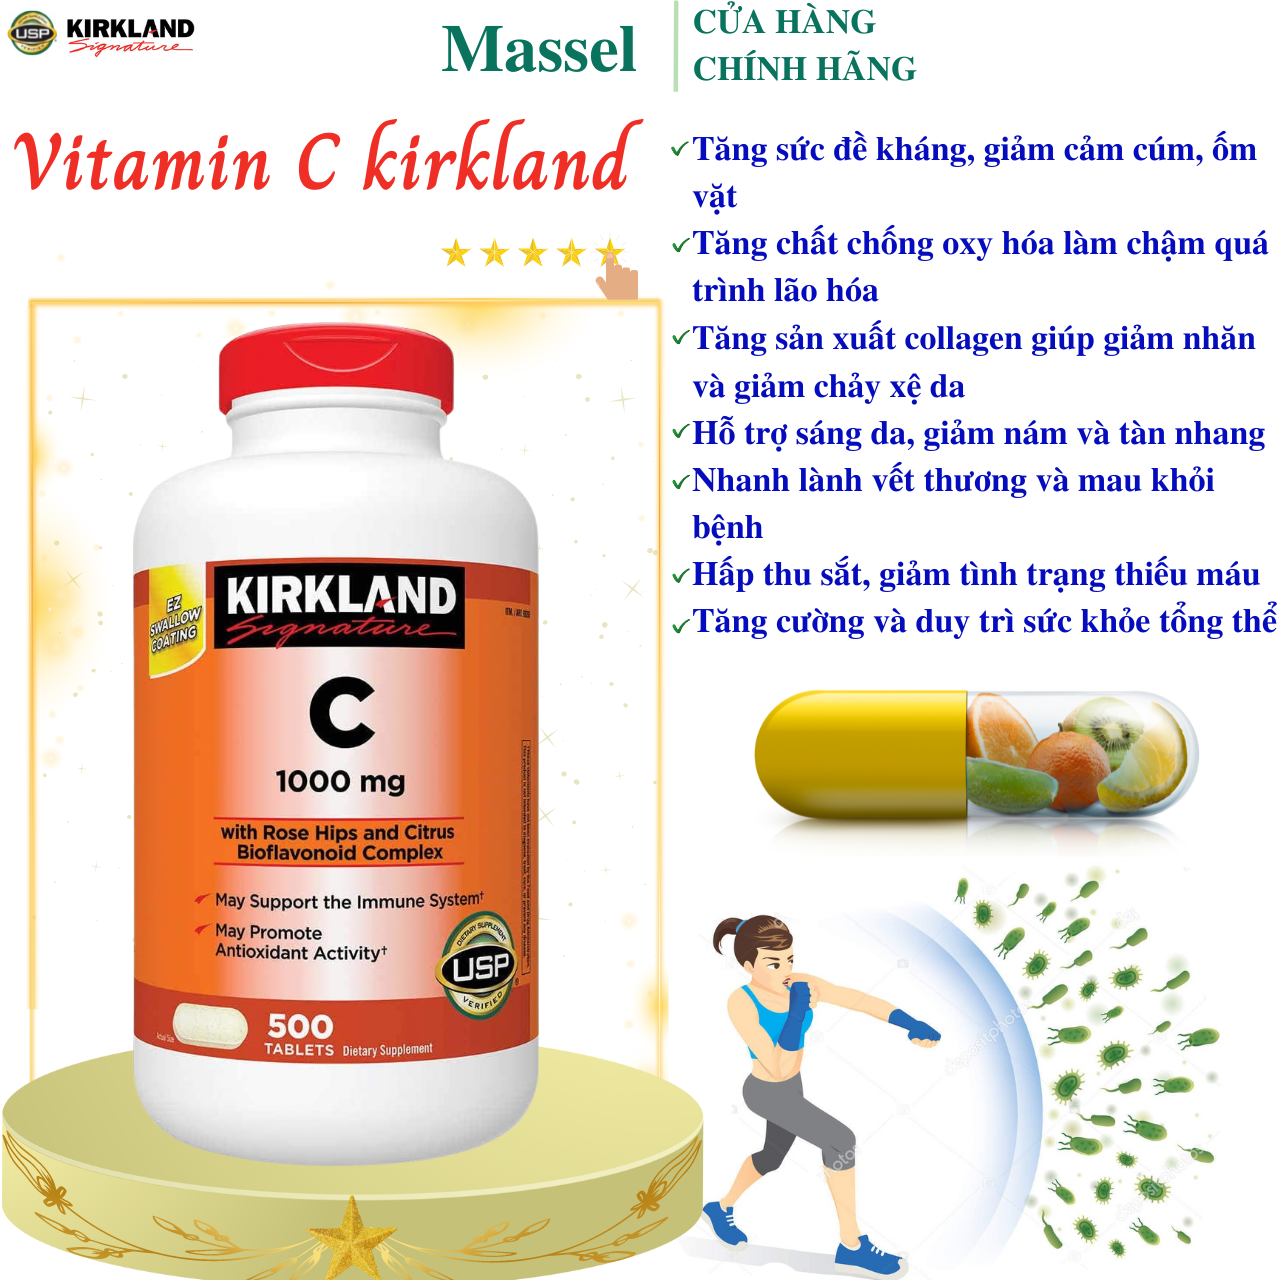 Hình ảnh Vitamin C Kirkland Signature Mỹ tăng sức đề kháng, thức đẩy sẩn xuất collagen tự nhiện, sáng da, nhanh lành bệnh - Massel Official